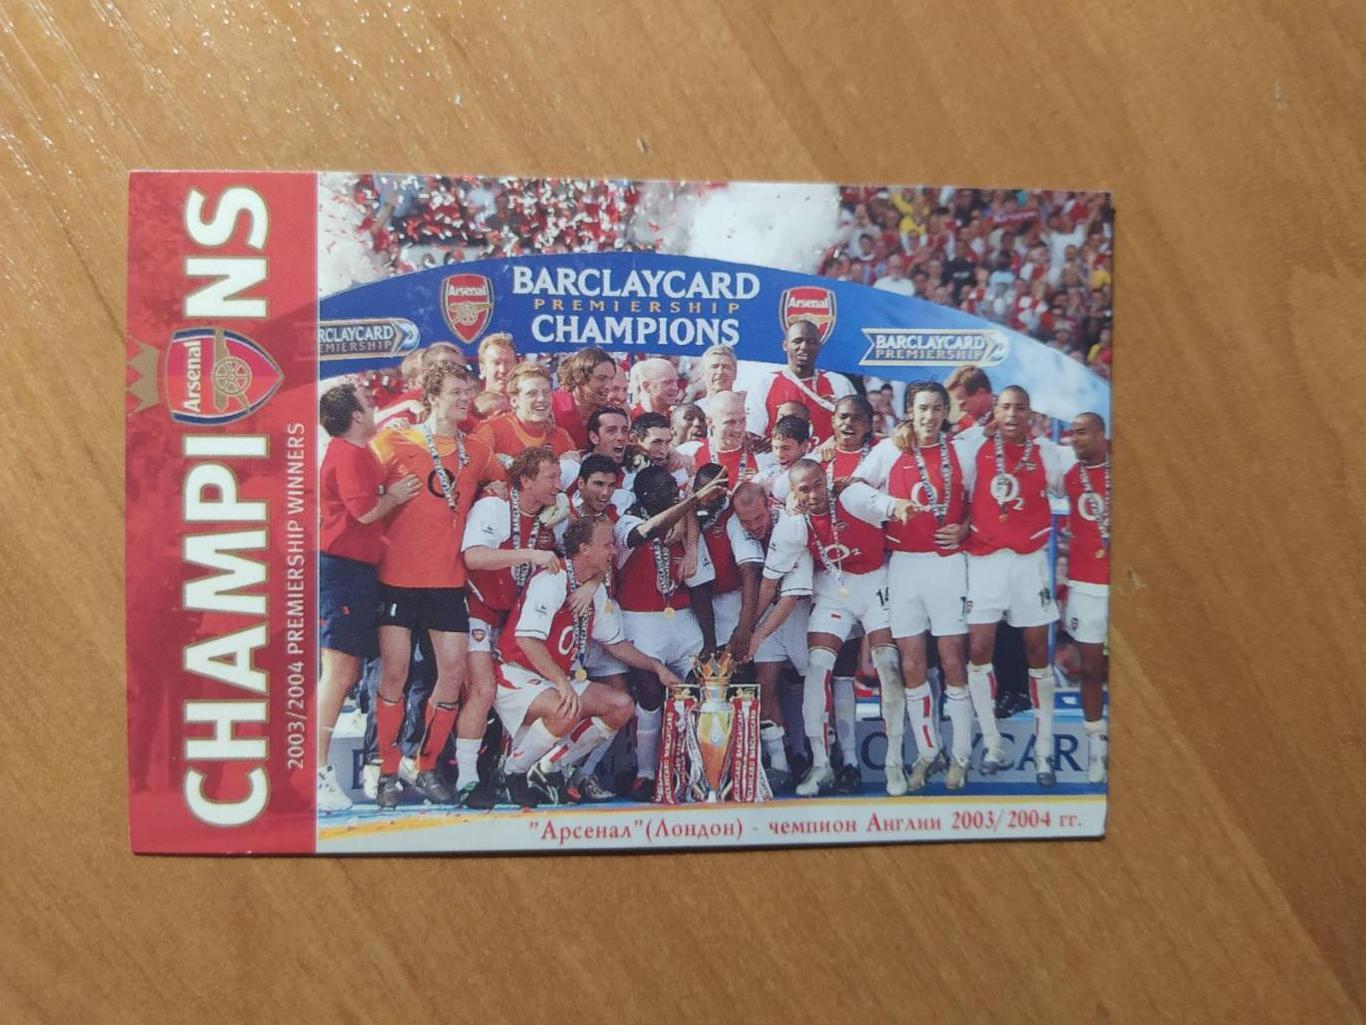 Футбольный клуб Арсенал чемпион Англии 2003- 2004 гг.